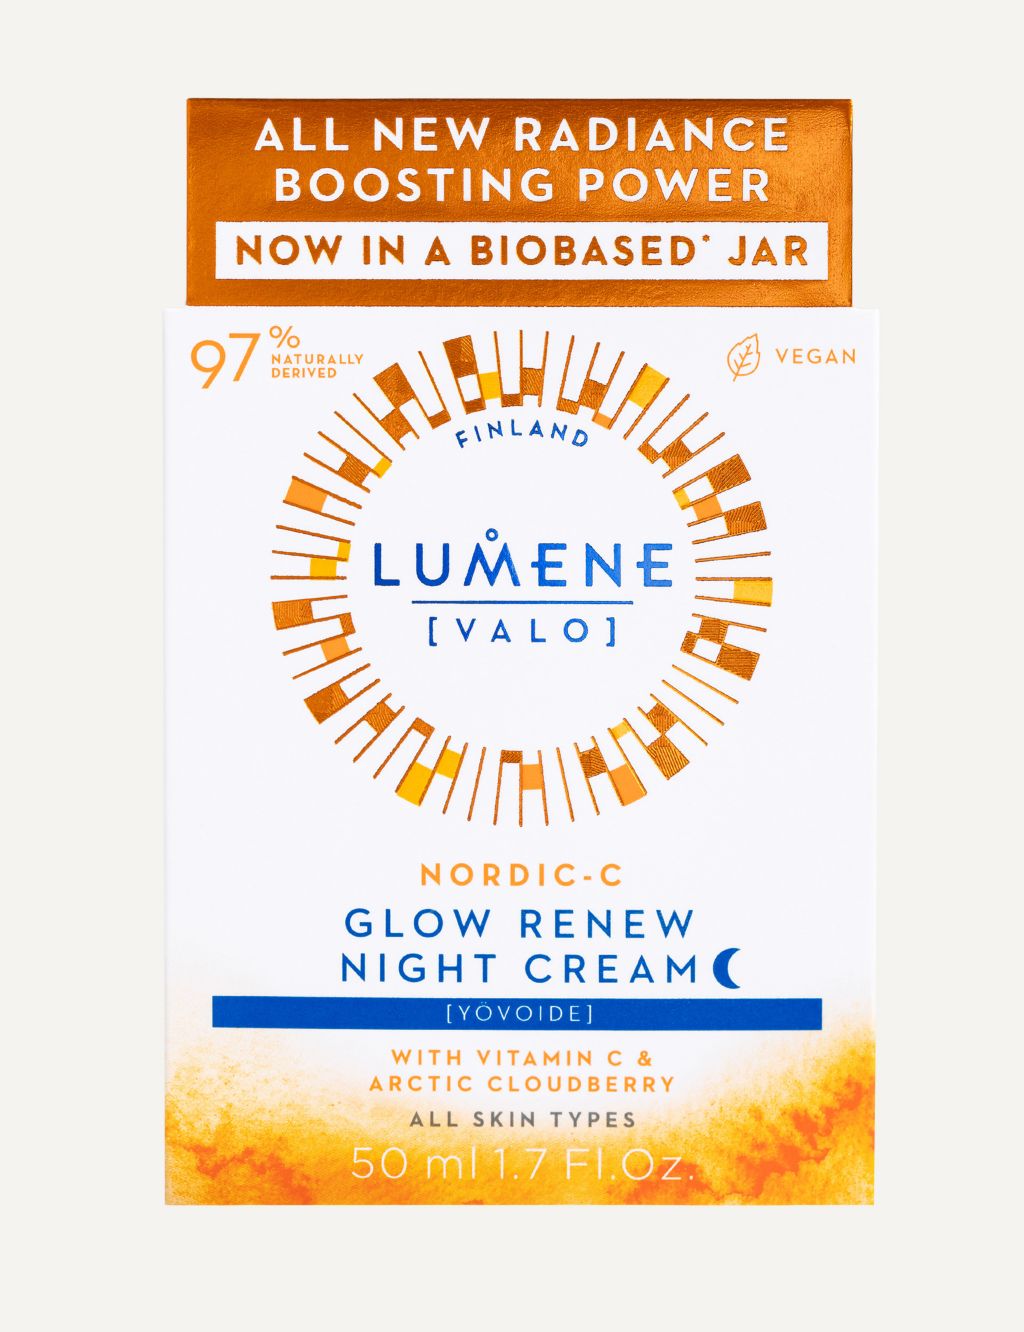 Lumene Nordic-C [VALO] Glow Renew Night Cream 50ml 1 of 3